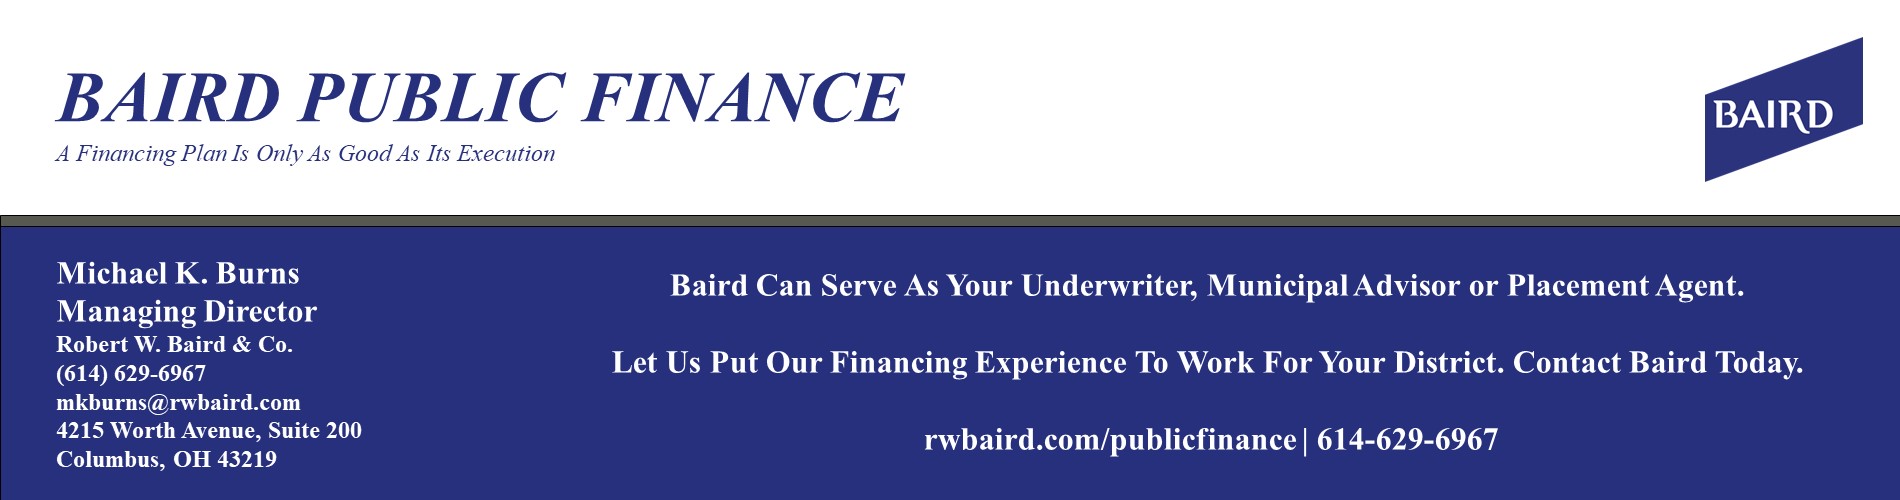 Baird Public Finance